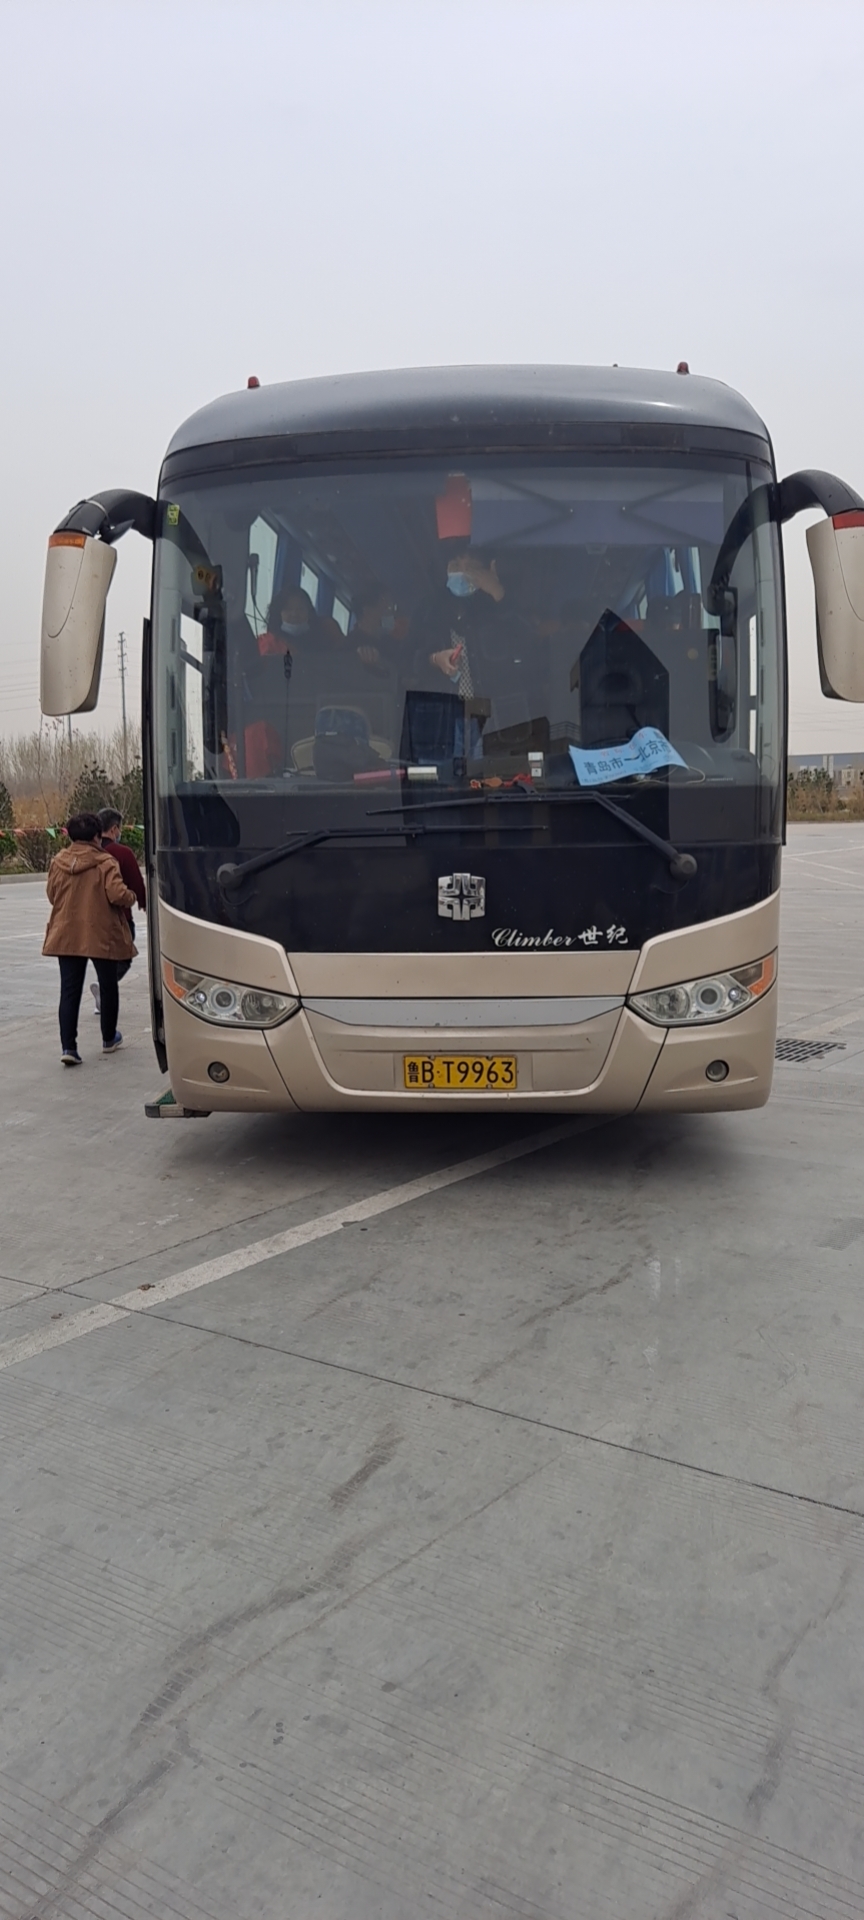 豪华客车(青州到乌兰浩特)直达大巴车票价低